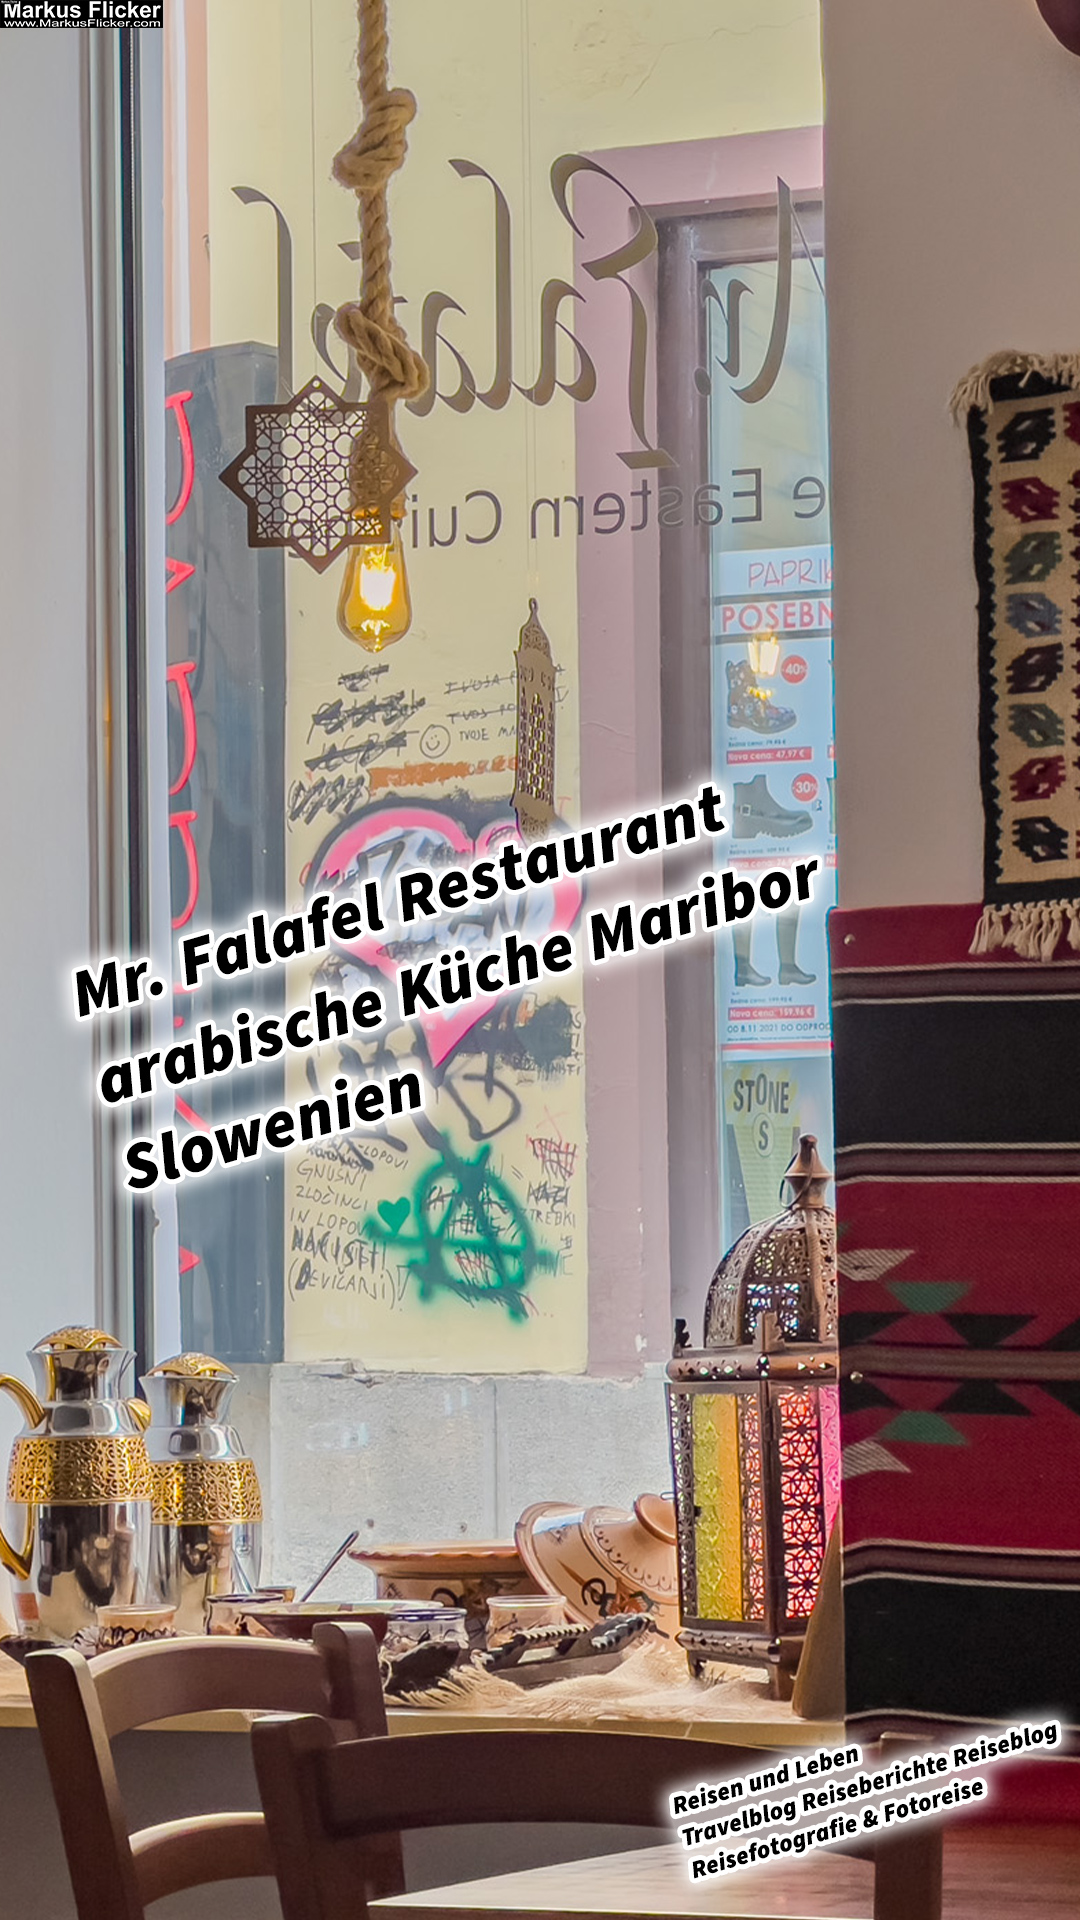 Mr. Falafel Restaurant arabische Küche Middle Eastern Cusine Maribor Slowenien